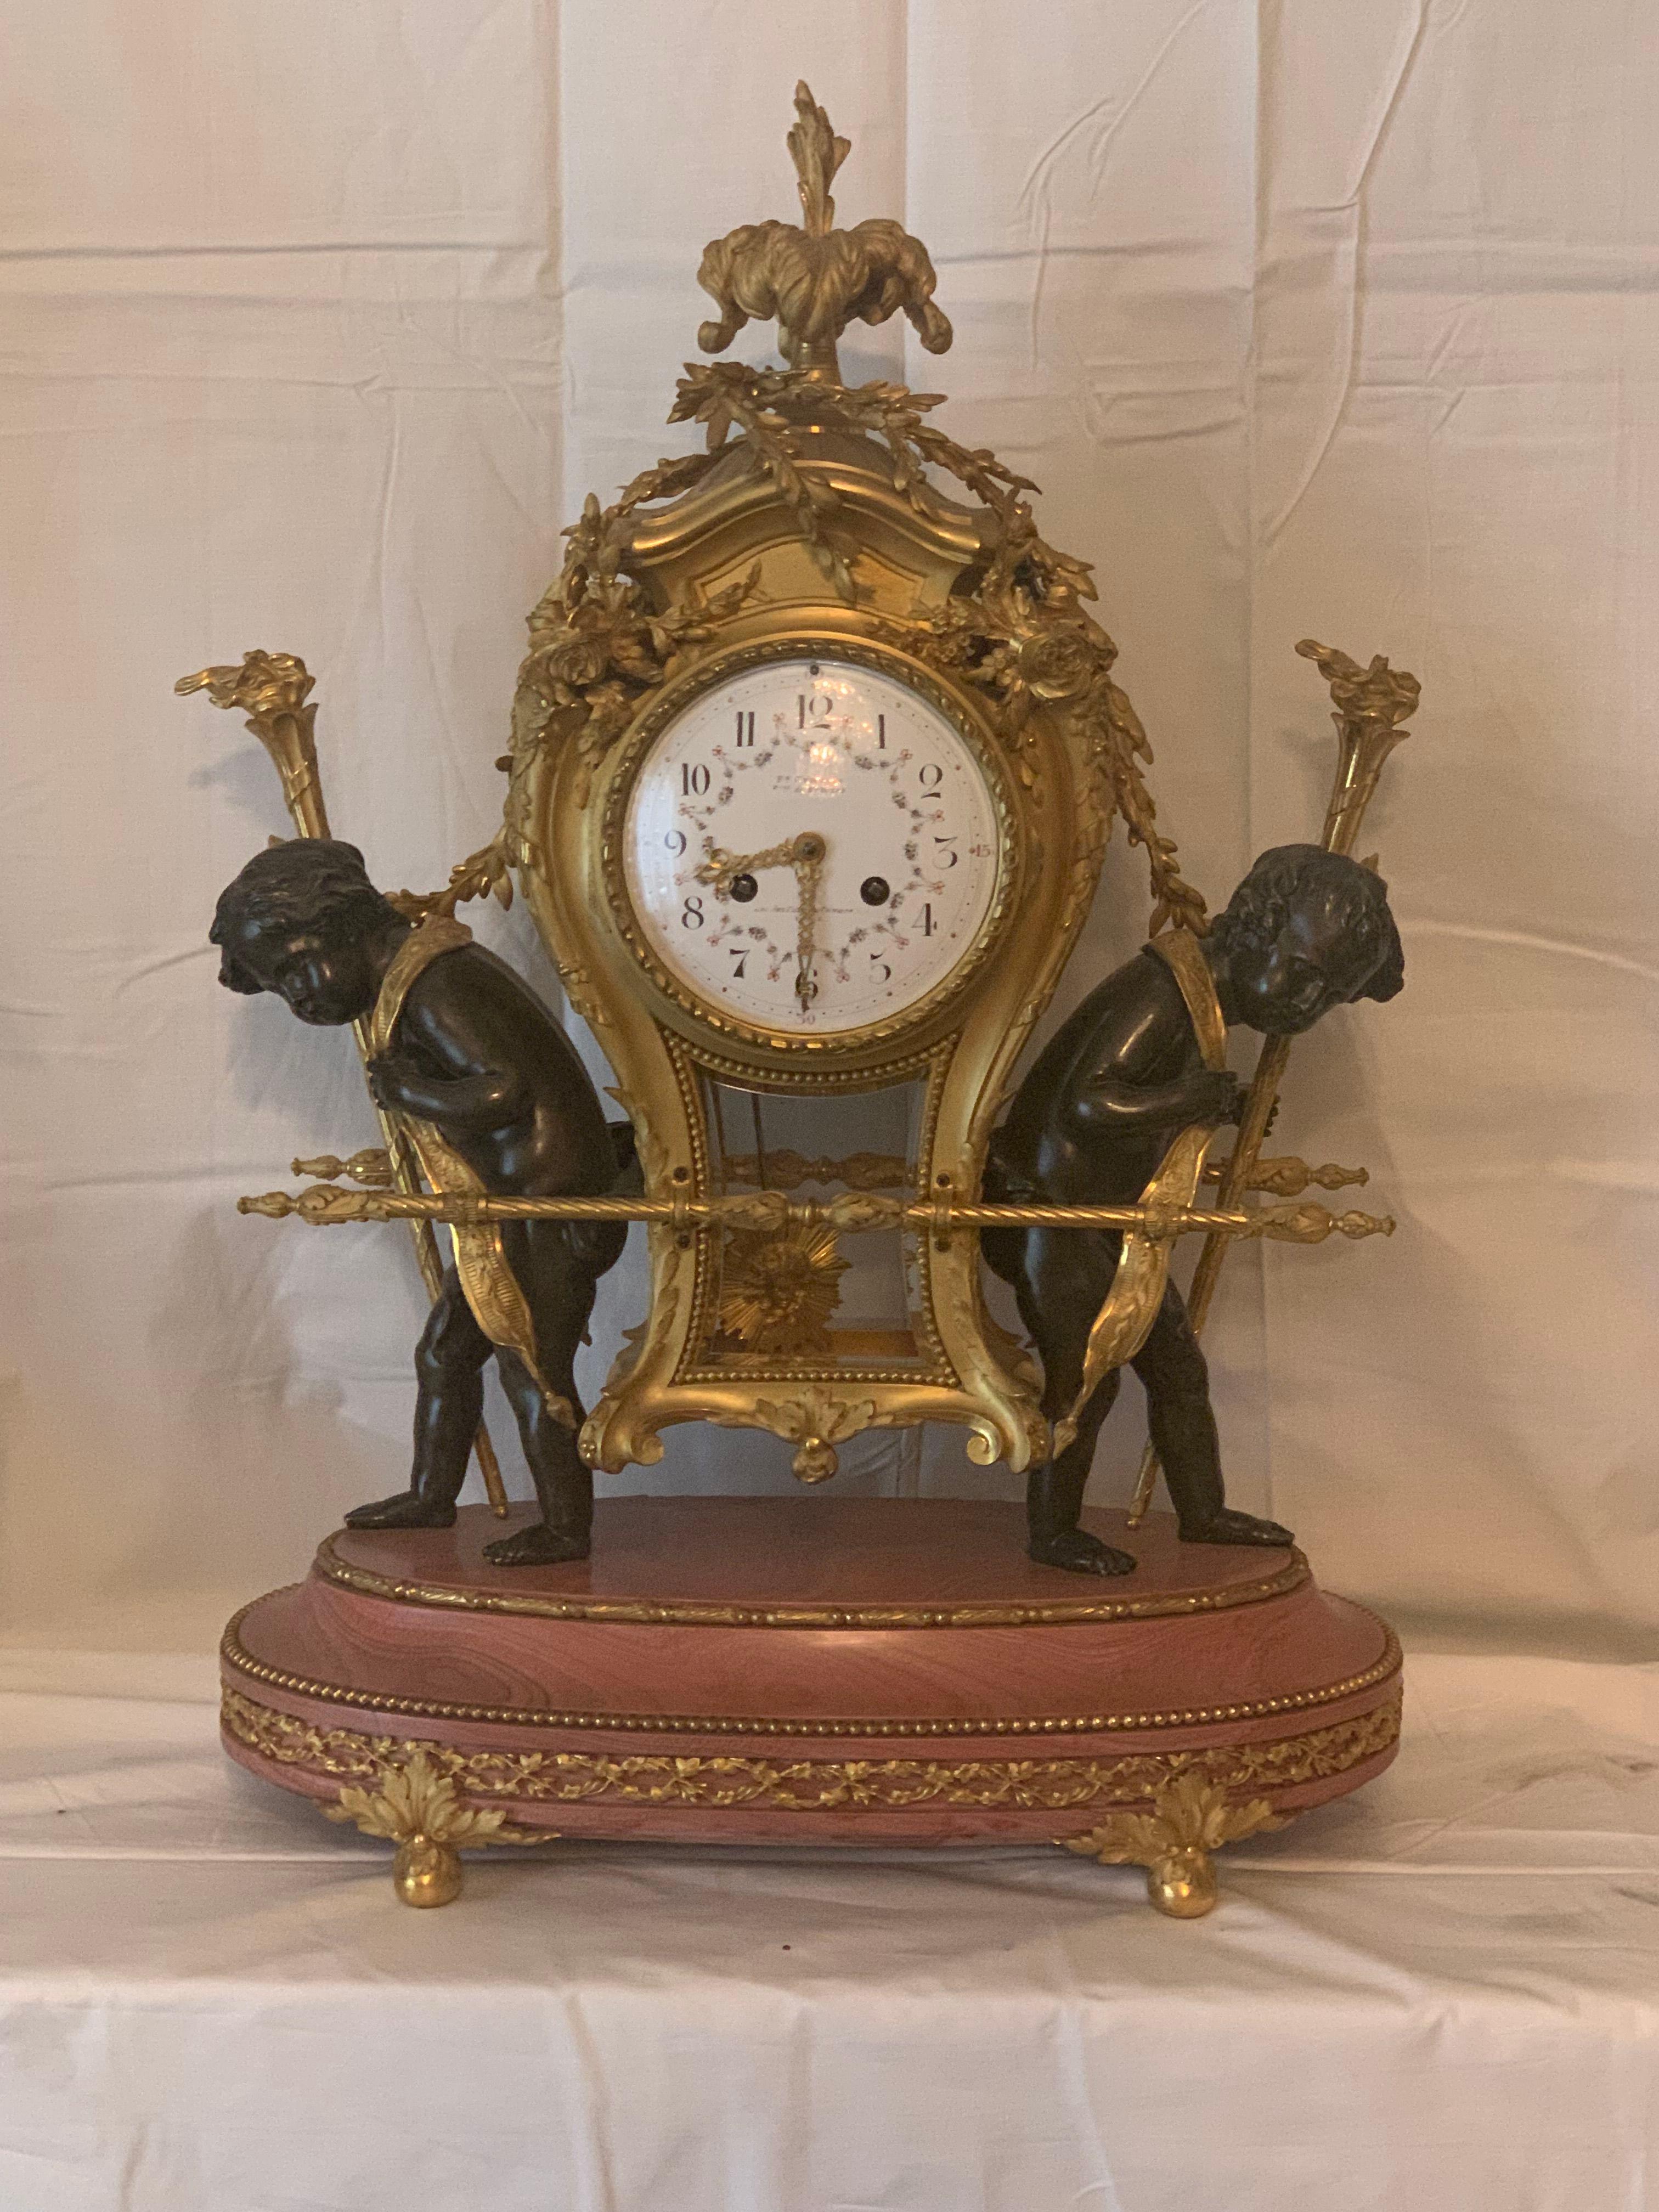 Horloge unique en marbre rose et bronze, pièce d'art décorative
L'horloge est conçue à l'image d'une chaise à porteurs du 18e siècle, c'est-à-dire une chaise couverte dans laquelle s'asseyait un membre de l'élite sociale et qui était portée par